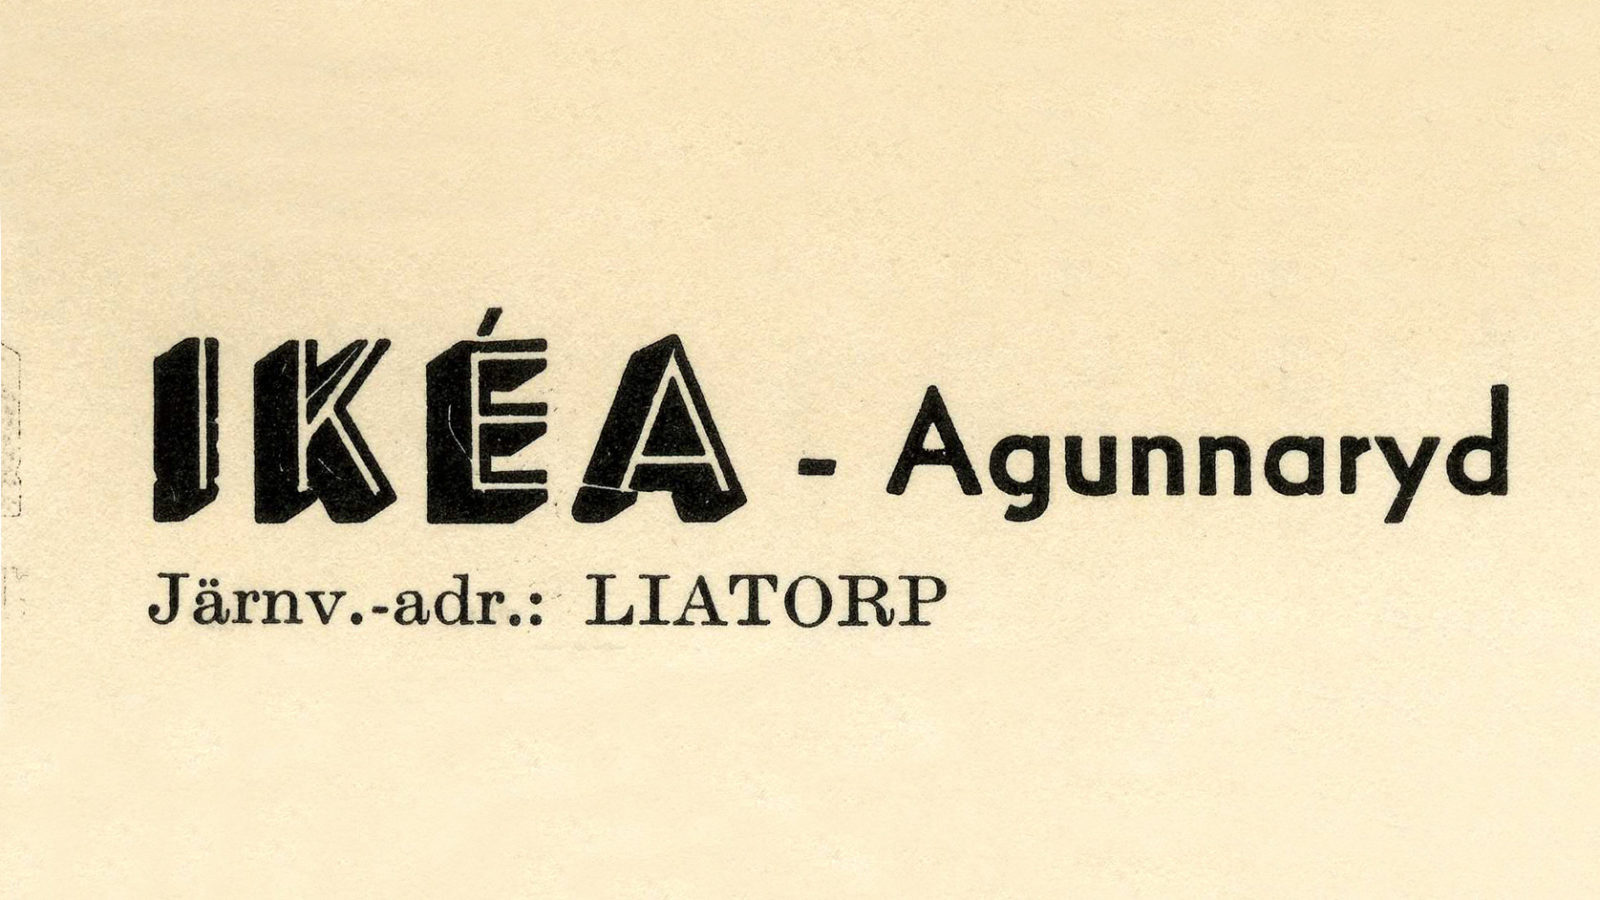 Gulnat blad med text IKÉA, Agunnaryd, med mindre bokstäver Järnv-adr: LIATORP.